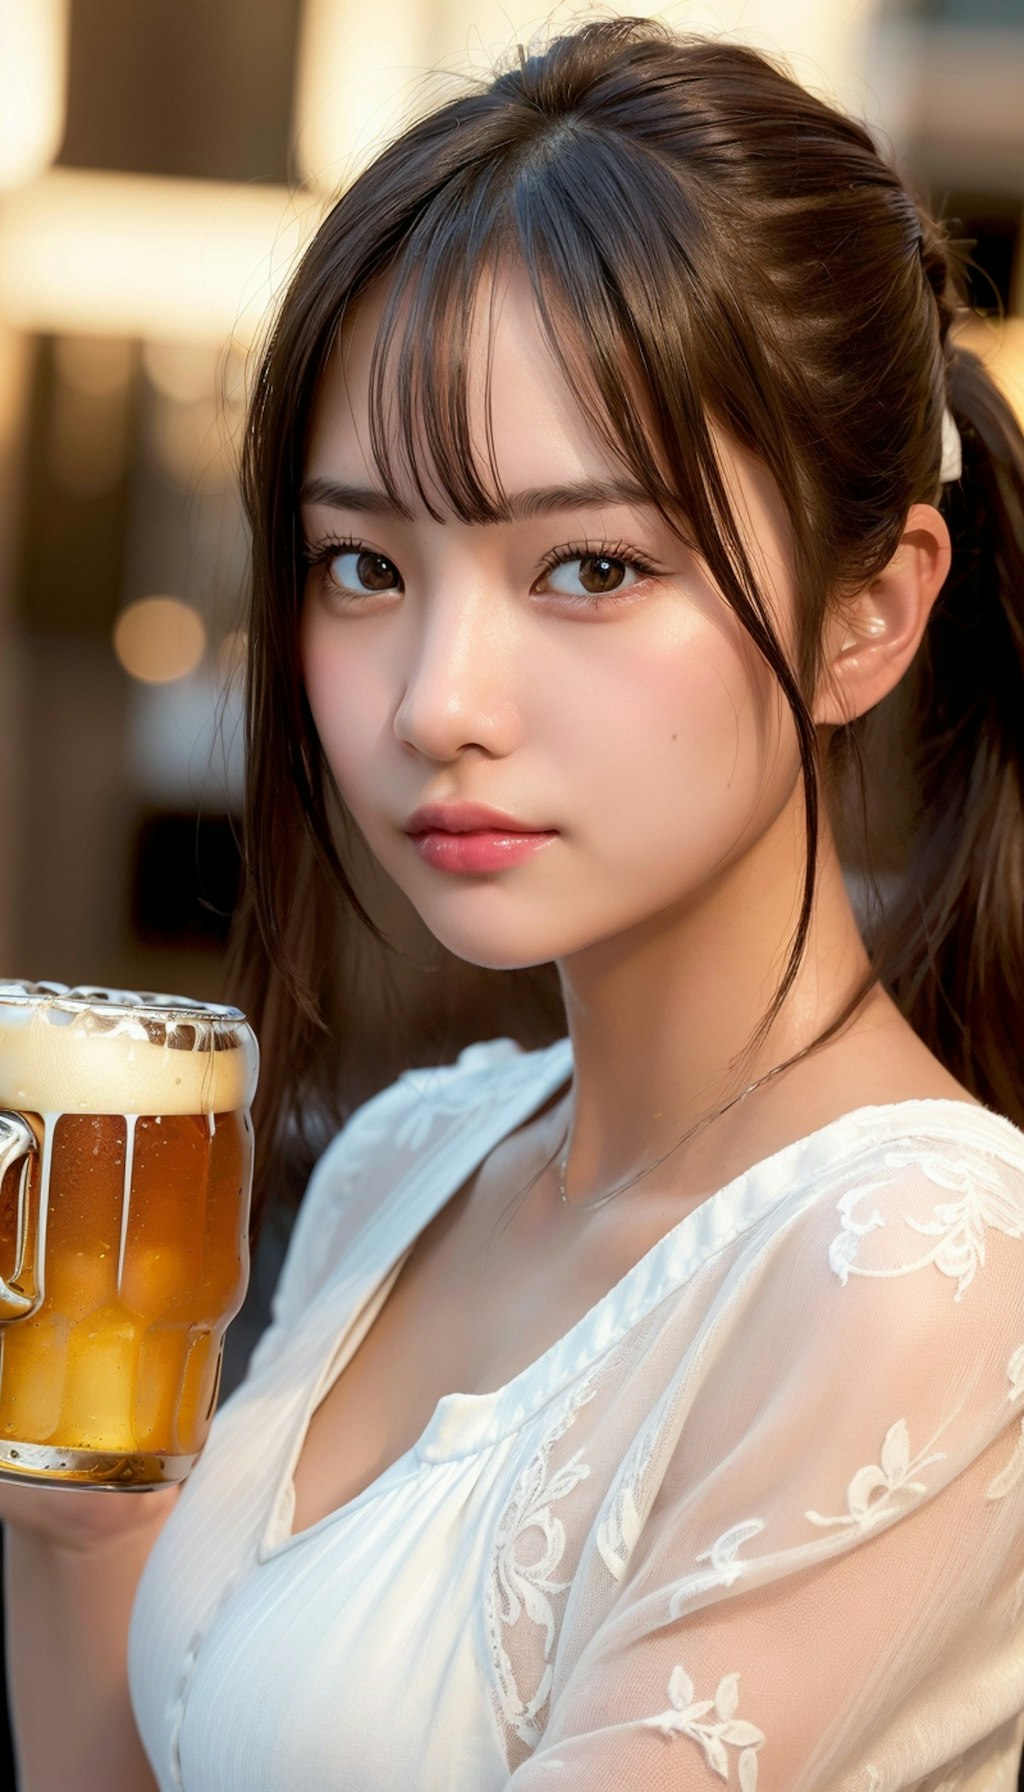 ビール41